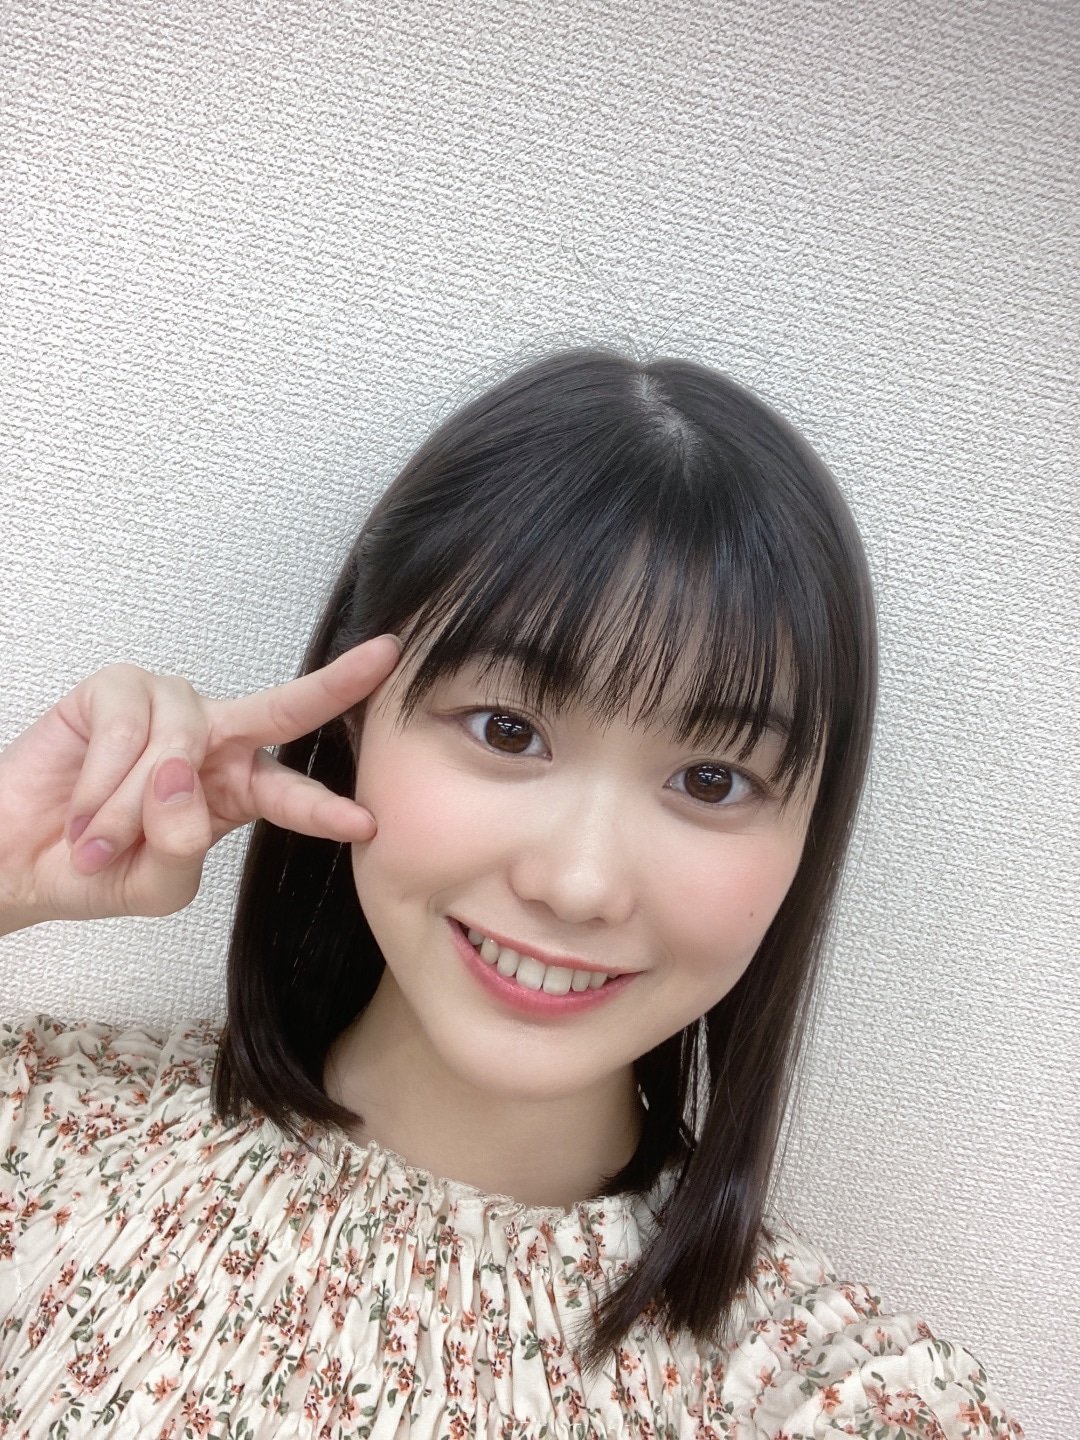 ぬれんぼう on Twitter: "つばきファクトリーの八木栞ちゃん可愛いですね。八木メシのセンスとインパクトが大き過ぎる… https